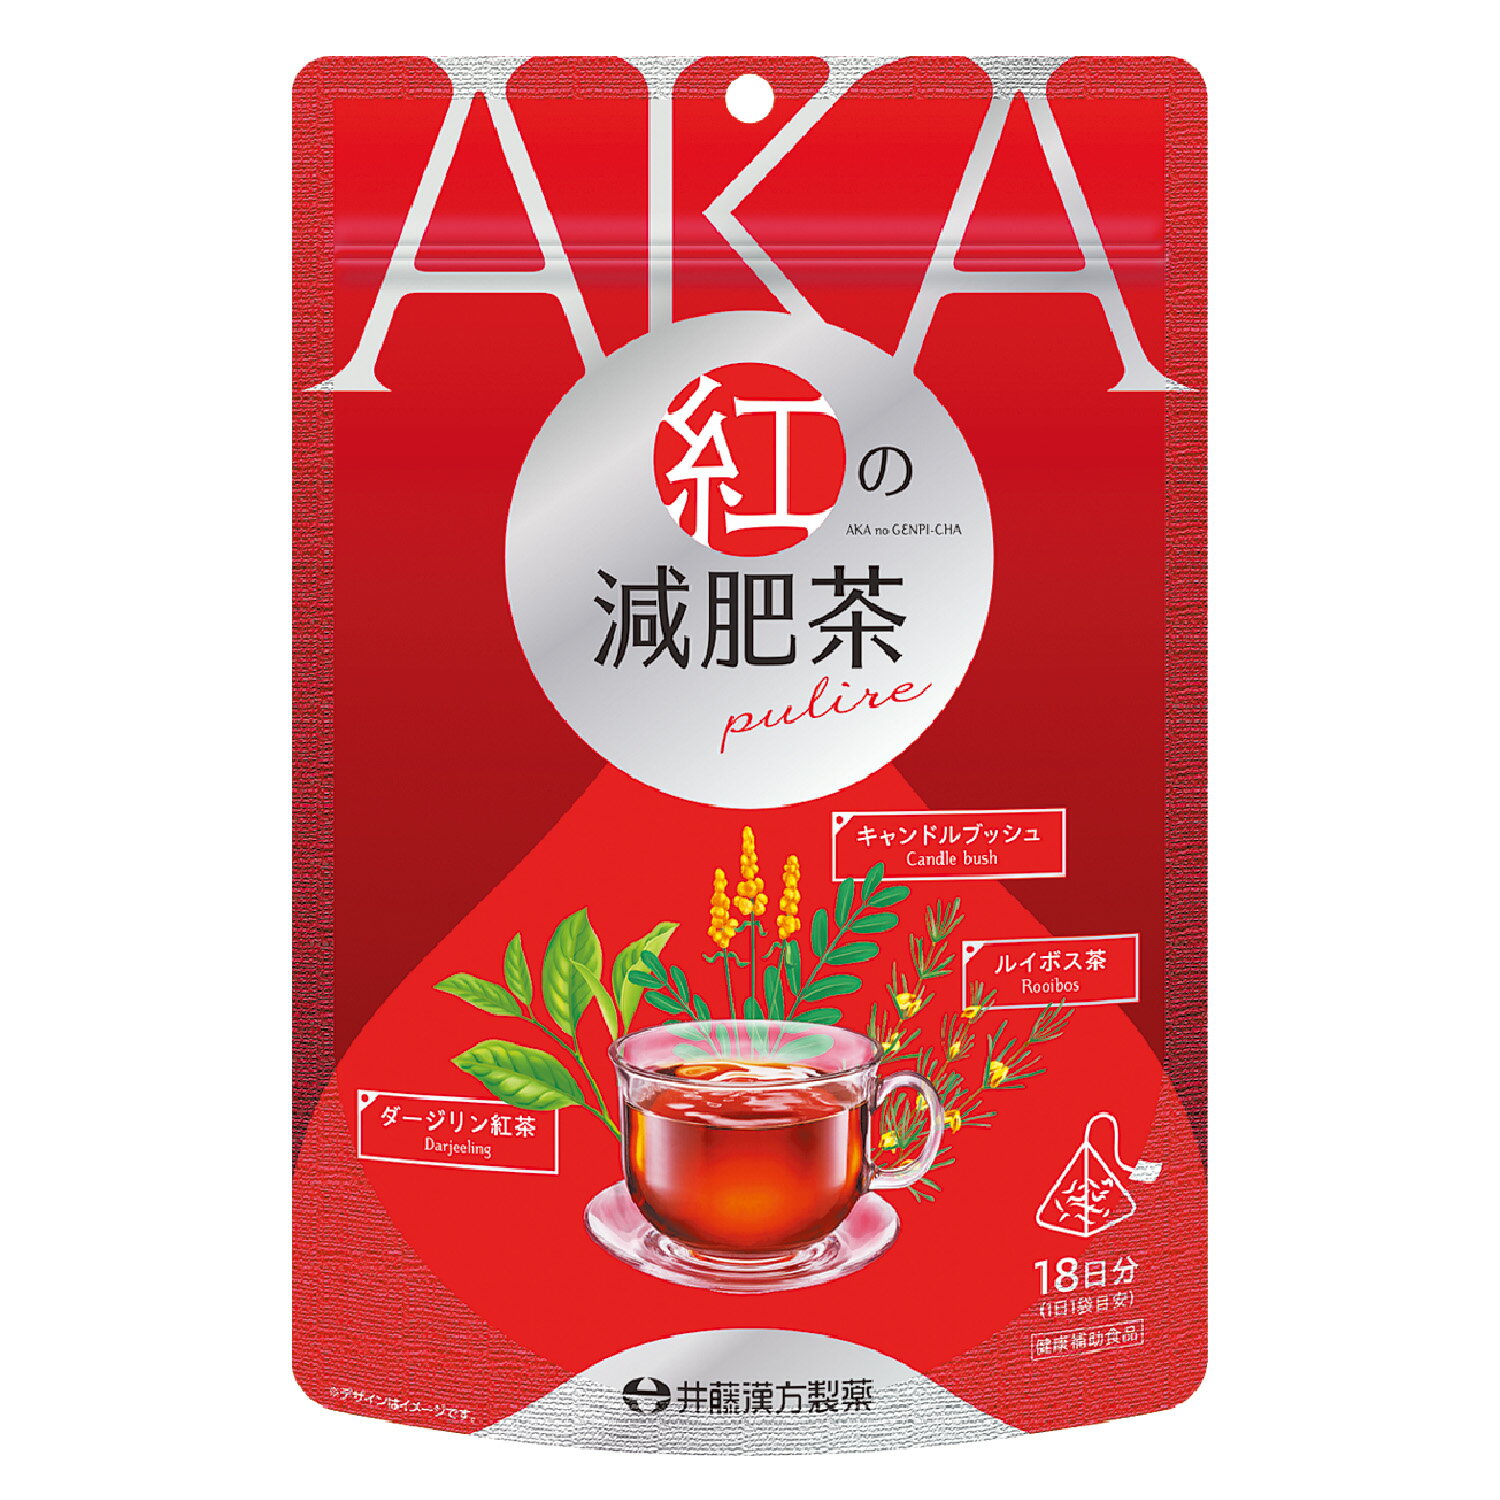 女性に人気の「ダージリン紅茶」「ルイボス茶」＋健康茶素材「キャンドルブッシュ」の3種を配合した、紅茶ベース、赤褐色の液色の減肥茶です。ひも付き三角ティーバッグタイプ。0kcalですっきりおいしくダイエットをサポートします。 ・メーカー：井藤漢方製薬株式会社 ・生産国：日本 ・商品区分：健康食品 ・名称（一般的名称）：ブレンド茶 ・原材料名：キャンドルブッシュ（インド産）、紅茶、ルイボス茶【原材料の産地】インド（キャンドルブッシュ、紅茶）、南アフリカ（ルイボス茶） ・内容量：54g（3g×18袋） ・賞味期限：パッケージに記載 ・保存方法：高温・多湿、直射日光を避け、涼しい所に保管してください。 ・販売者：井藤漢方製薬株式会社 大阪府東大阪市長田東 広告文責 株式会社マイドラ 登録販売者：林　叔明 電話番号：03-3882-7477 ※パッケージデザイン等、予告なく変更されることがあります。ご了承ください。